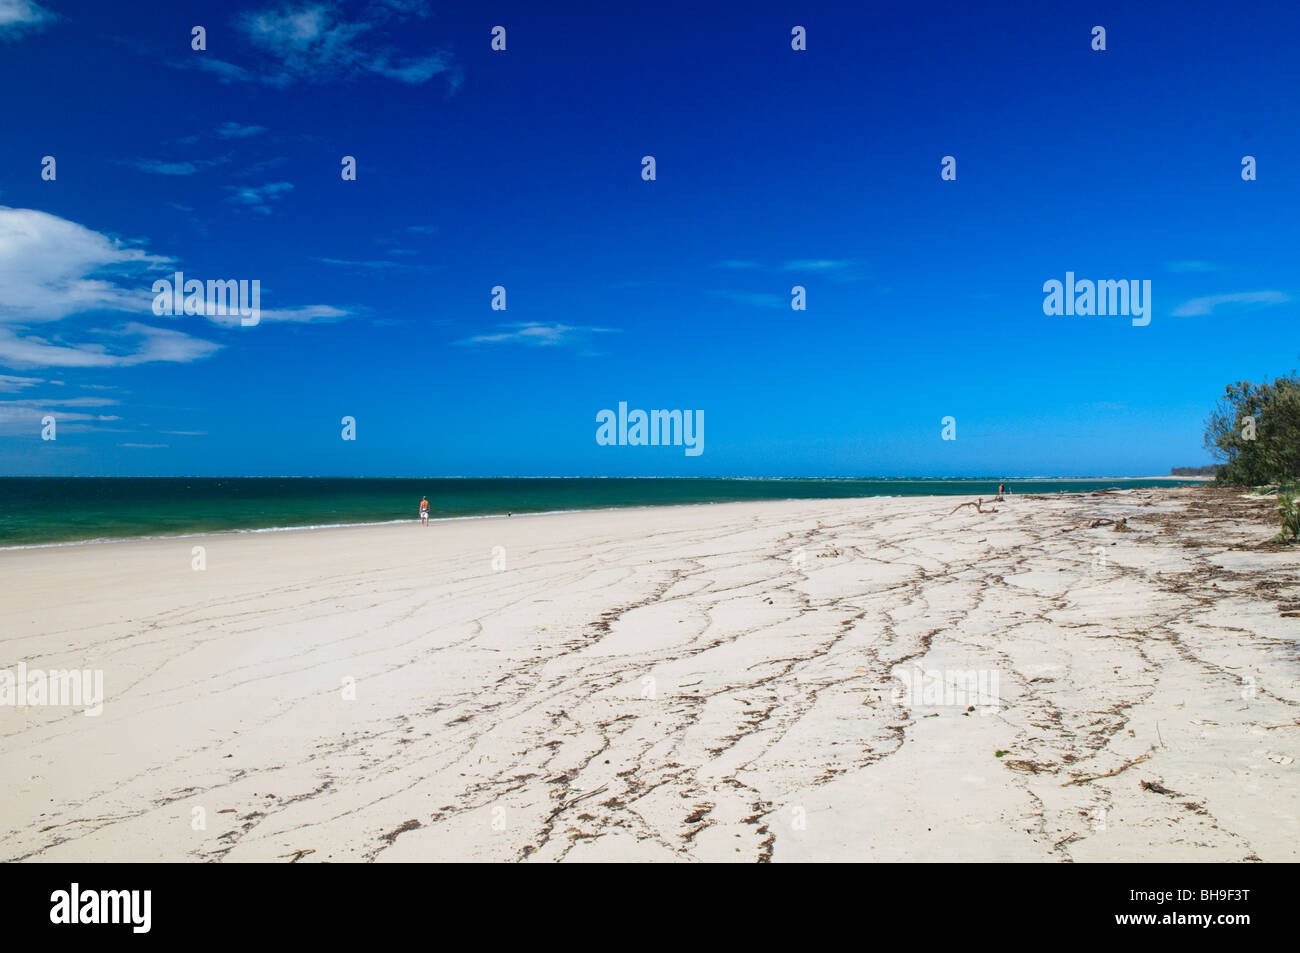 NORTH Stradbroke Island, Australien - Der weiße Sandstrand von Amity Punkt straft seinen Ruf als Standort für mehrere Haiattacken North Stradbroke Island, nur von Queenslands Hauptstadt Brisbane, ist der weltweit zweitgrößte Sand Insel und mit seinen kilometerlangen Sandstrände, die im Sommer ein beliebtes Urlaubsziel. Stockfoto